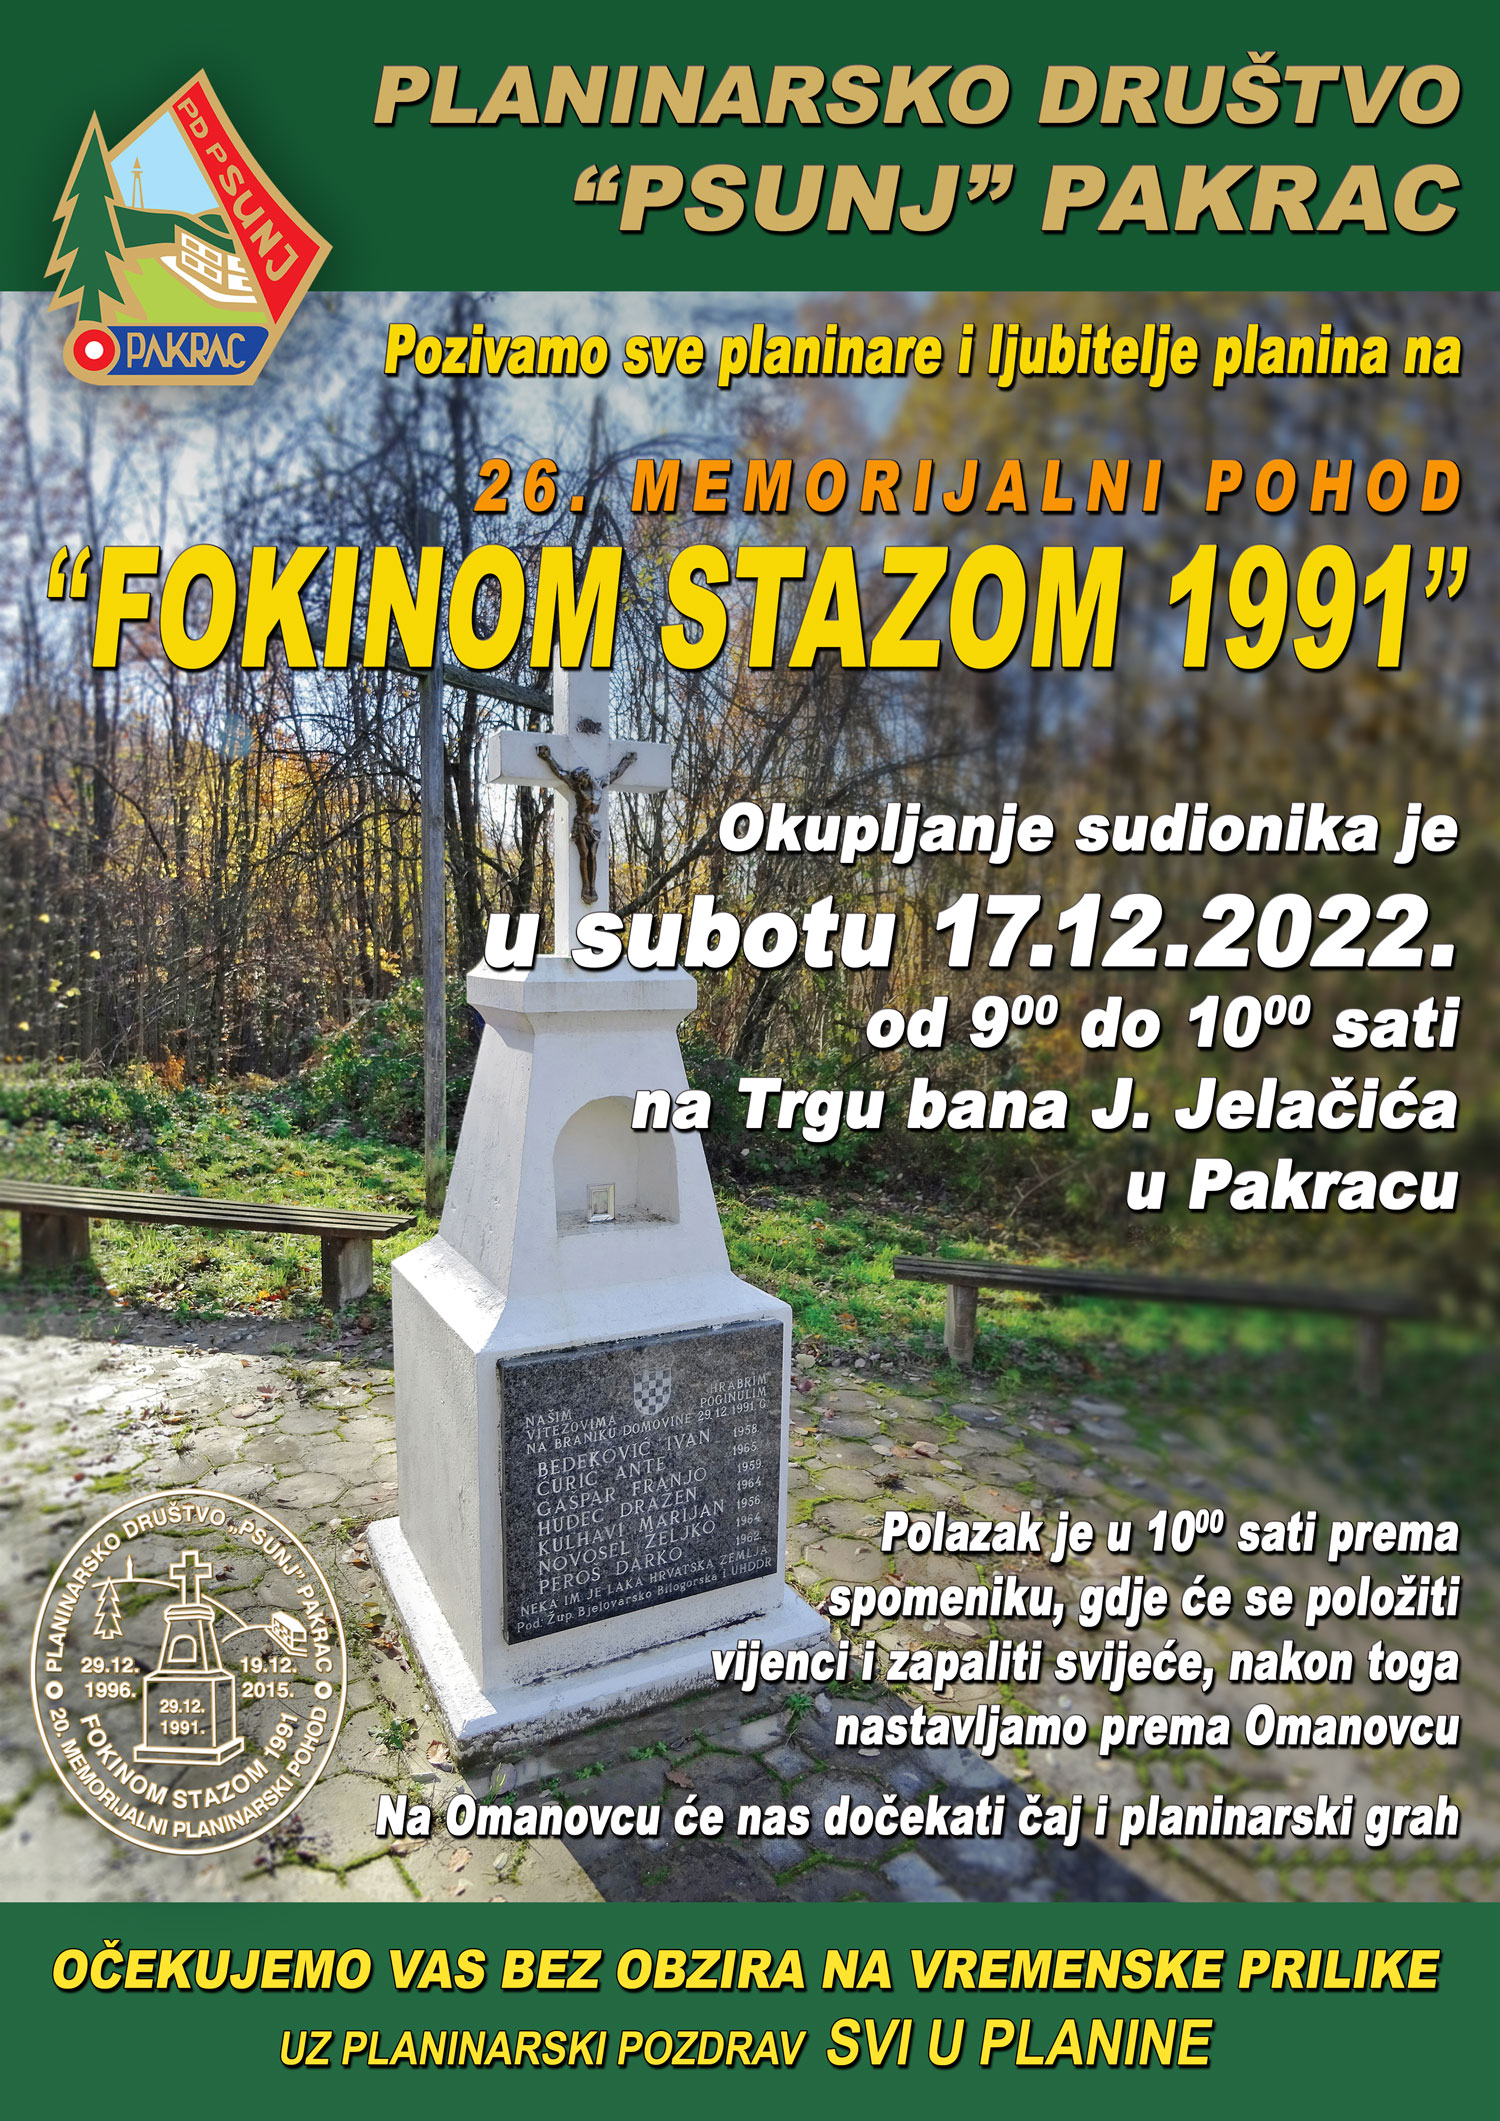 PD PSUNJ U subotu 26. planinarski pohod Fokinom stazom 1991.